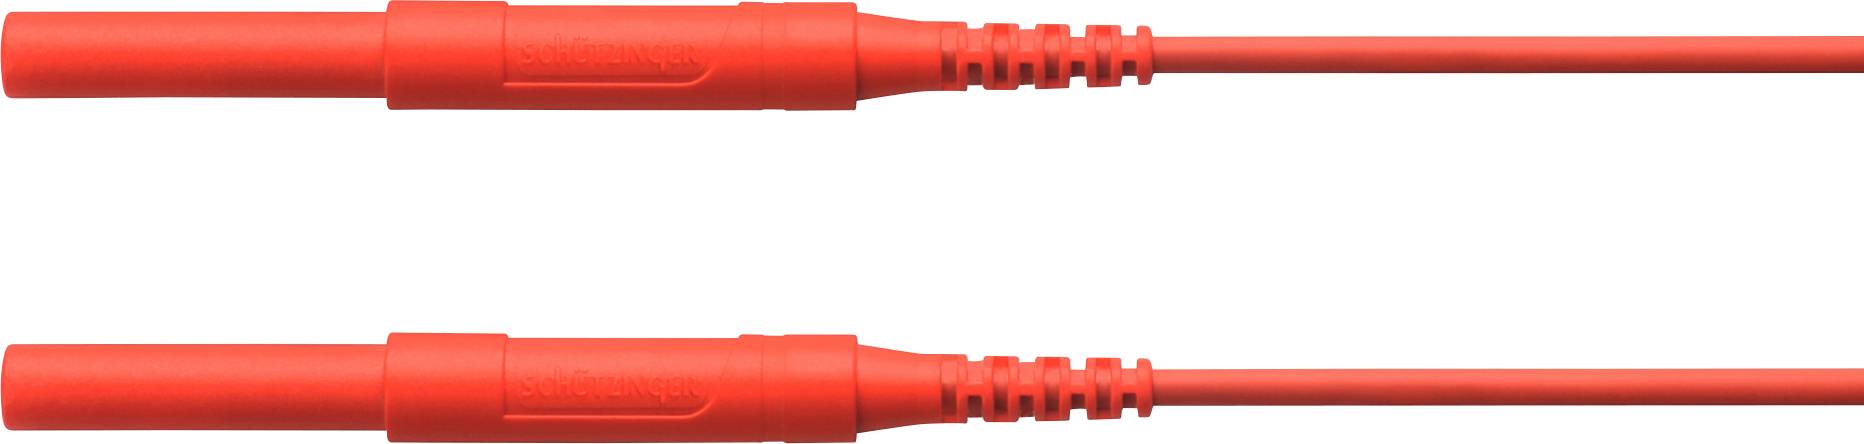 SCHÜTZINGER HSPL 8568 / AWG16 / 50 / RT Sicherheits-Messleitung [Stecker 4 mm - Stecker 4 mm] 5